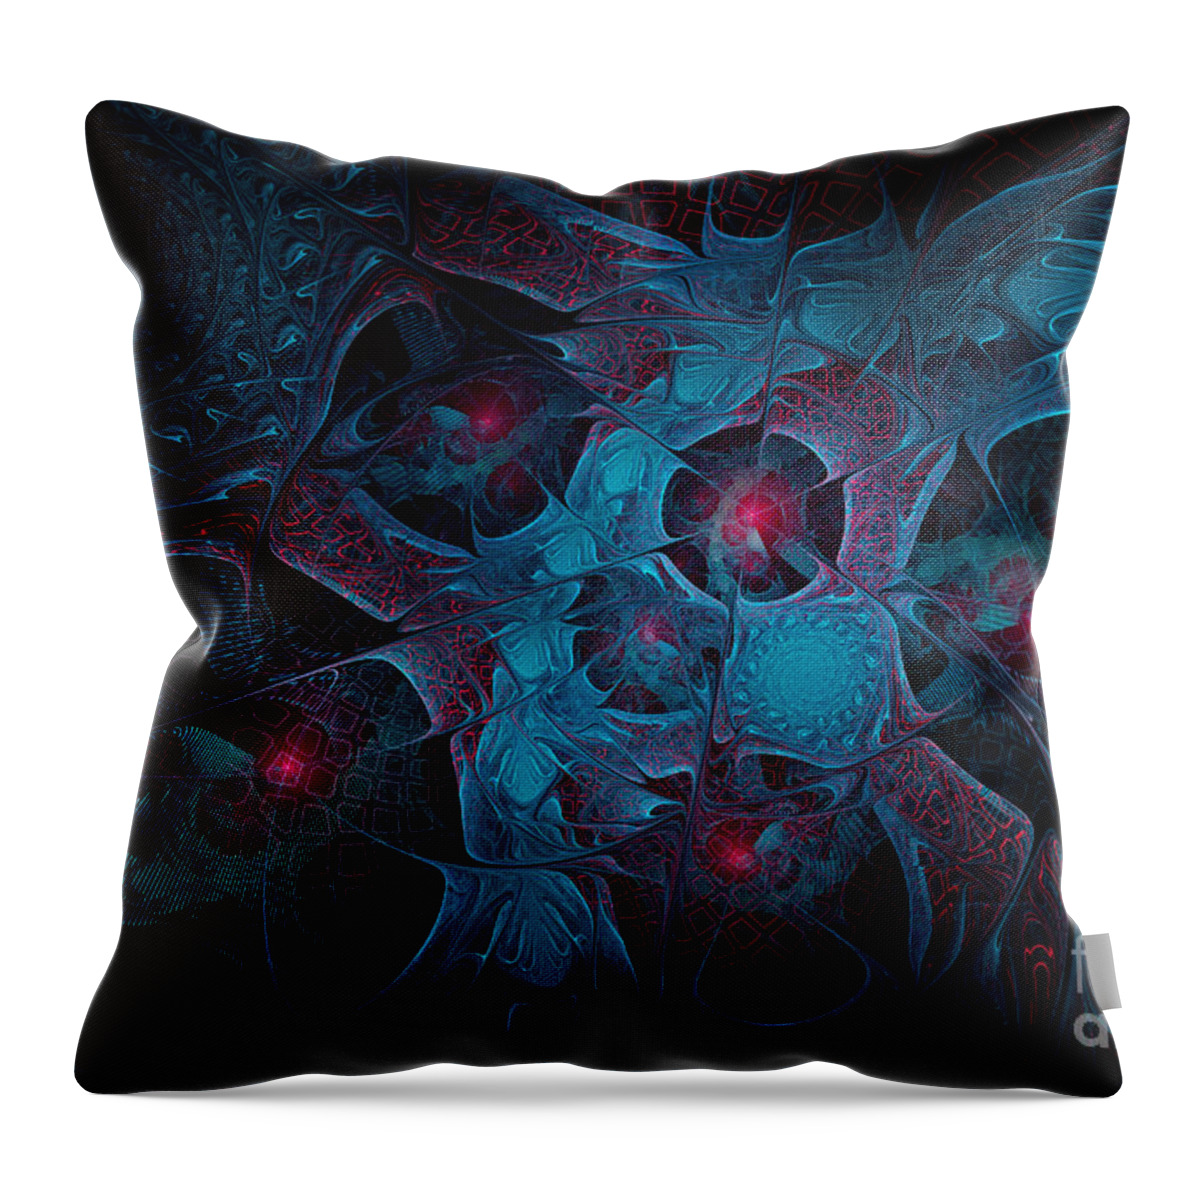 Flame Fractal Throw Pillow featuring the digital art Fractal Jewels by Ann Garrett